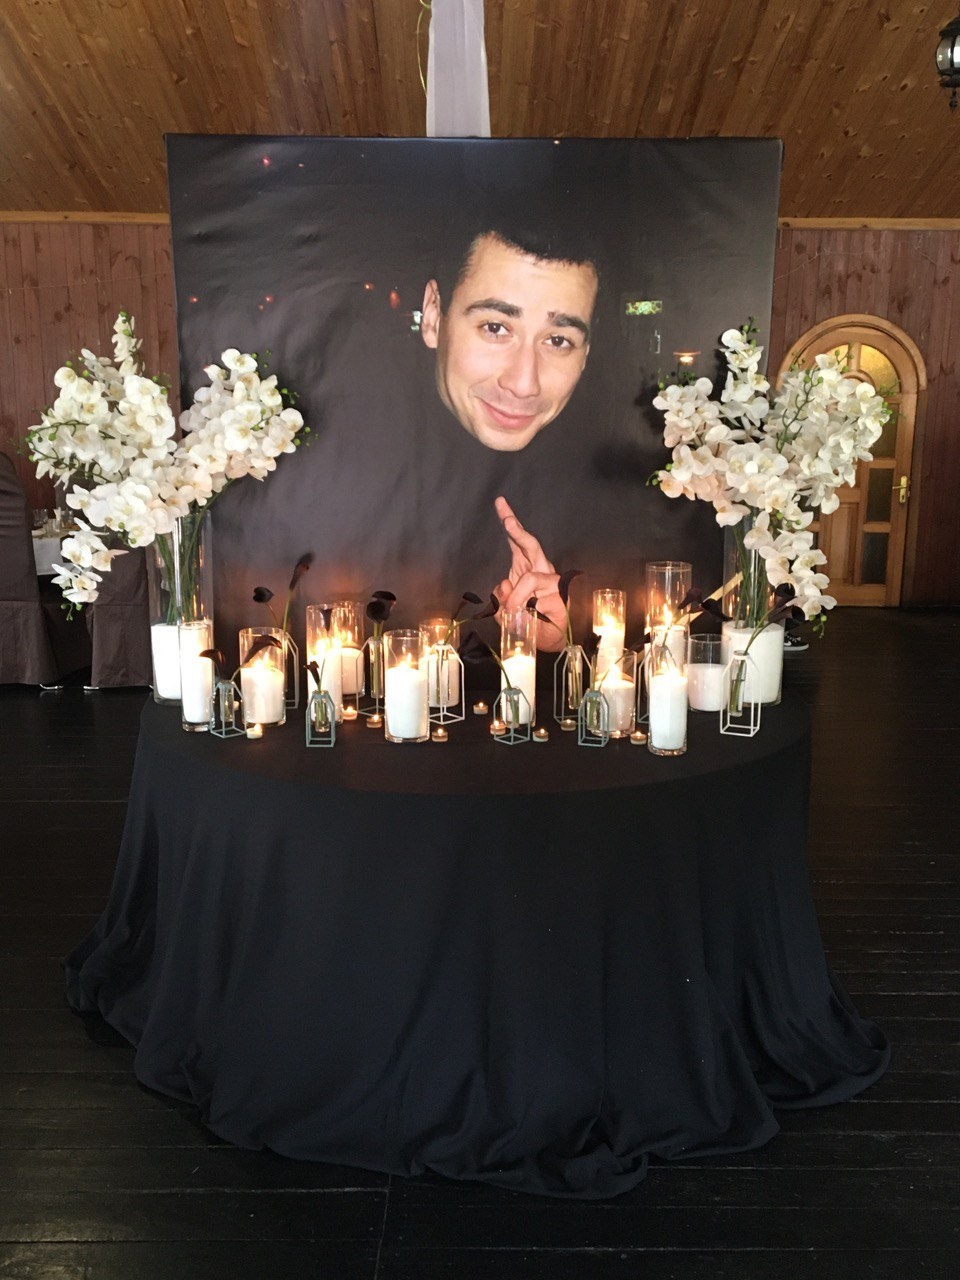 Дело о смертельном избиении парня под Киевом хотят замять: близкие погибшего бьют тревогу